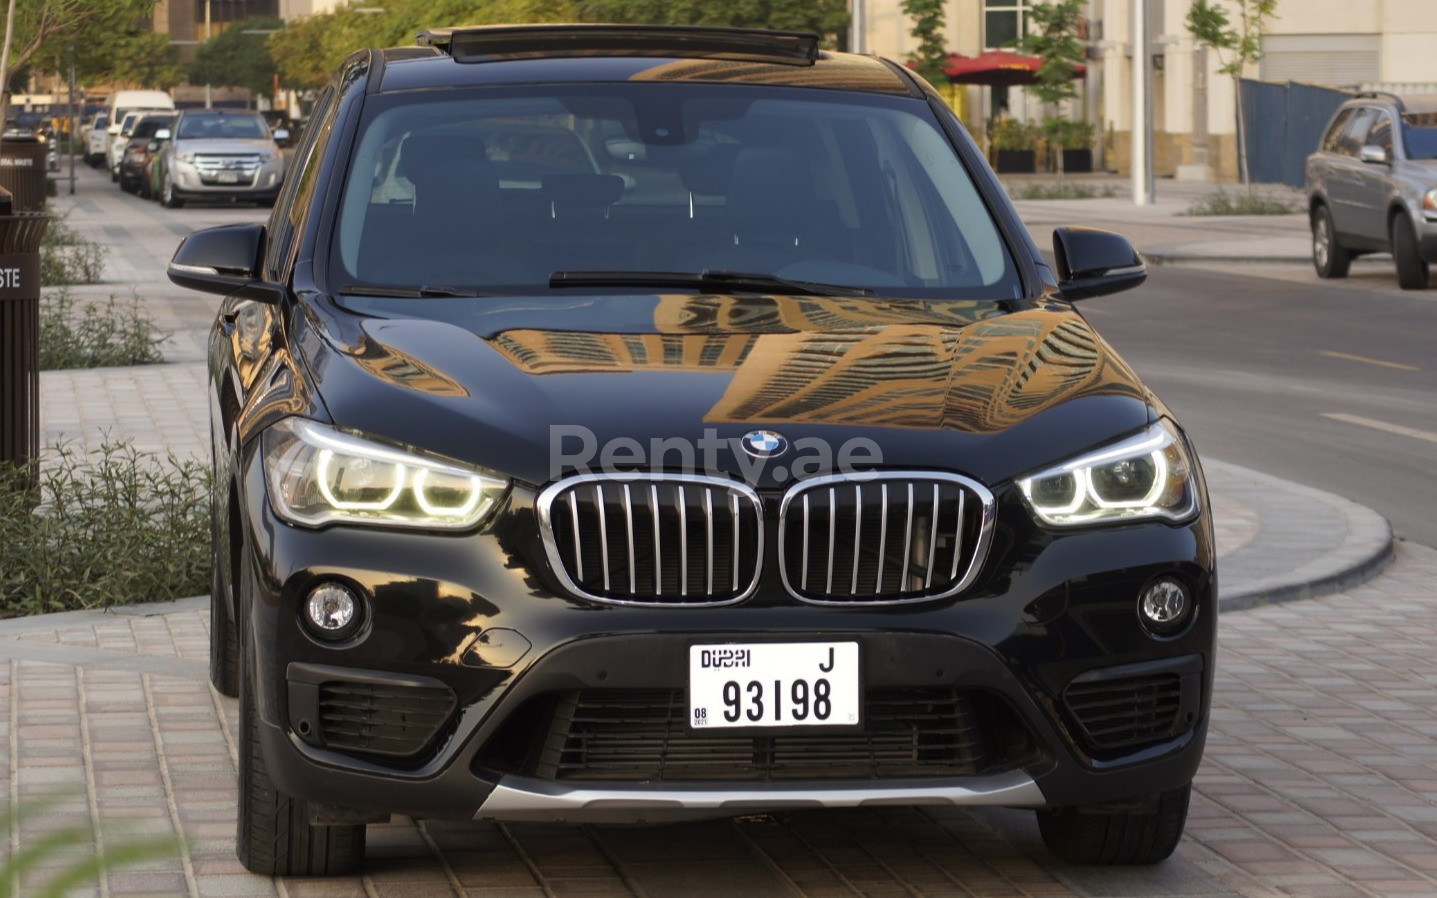 BMW X1 (Negro), 2019 para alquiler en Dubai